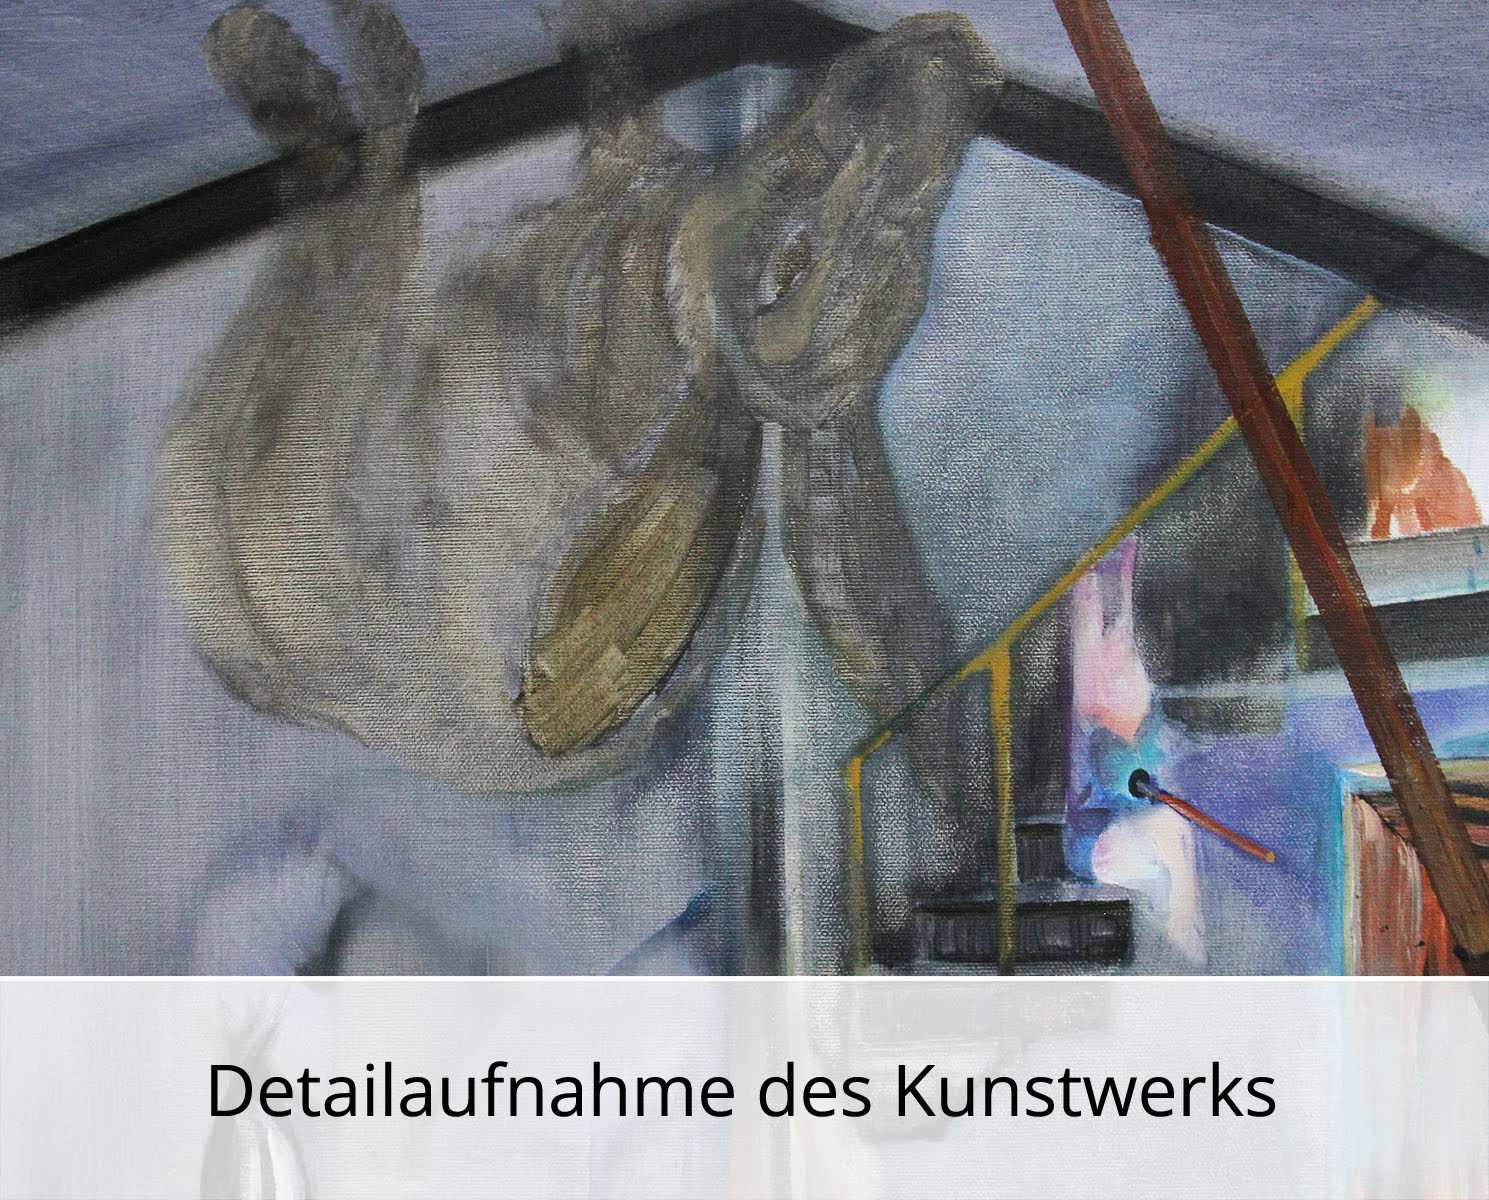 D. Block: "Der Hase schleicht auf leisen Pfoten", Original/Unikat, expressive Ölmalerei